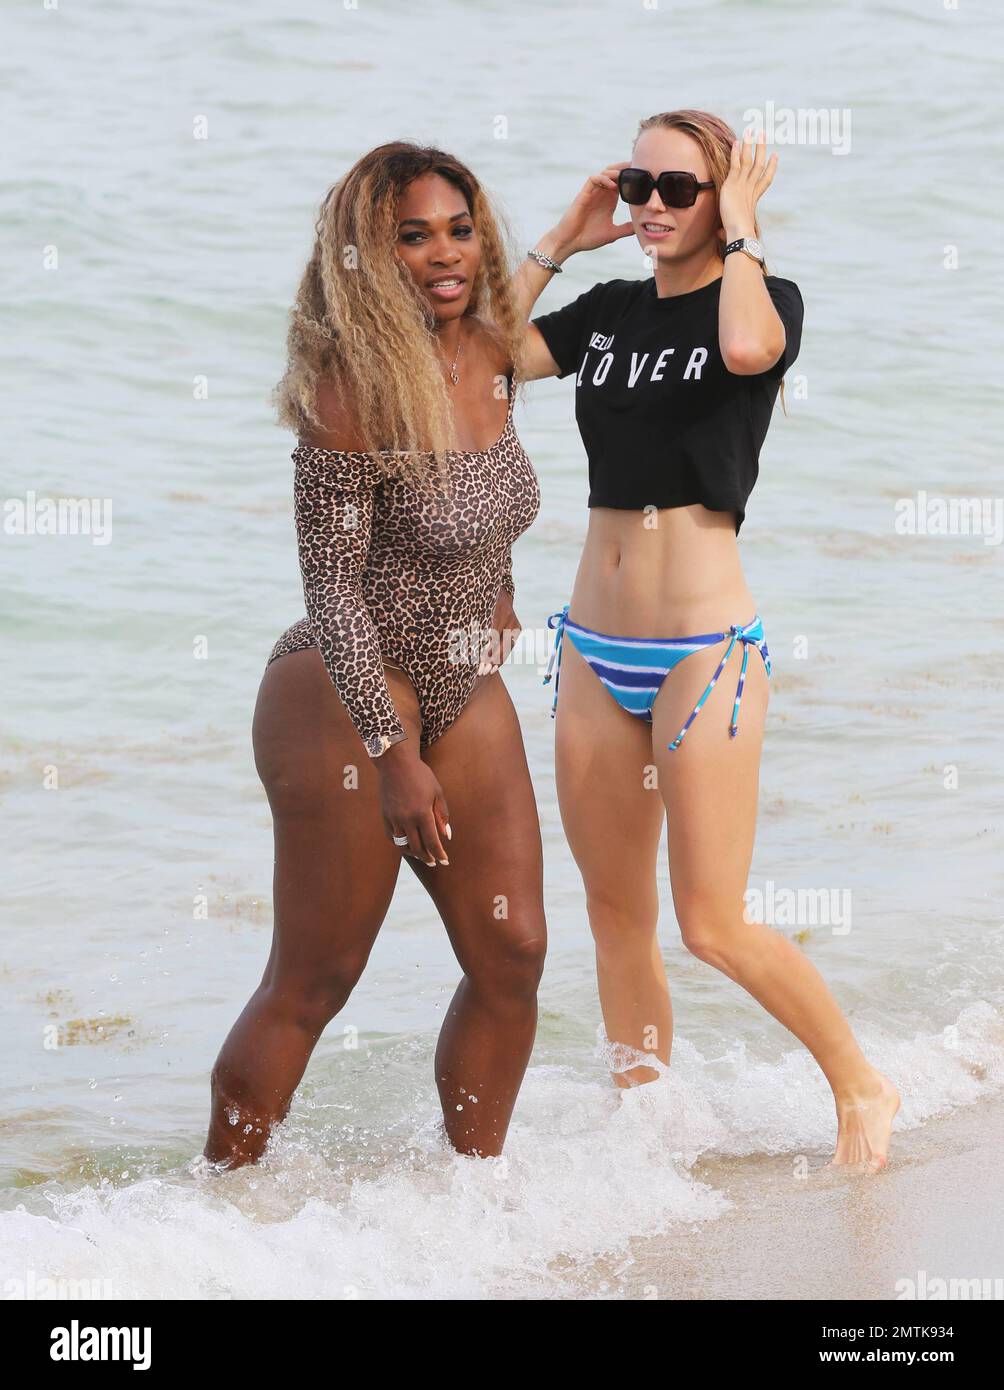 Les joueurs de tennis Serena Williams et Caroline Wozniacki sont repérés à  Miami Beach en appréciant la journée avec des amis. Serena porte un maillot  de bain unitard à imprimé animal tandis